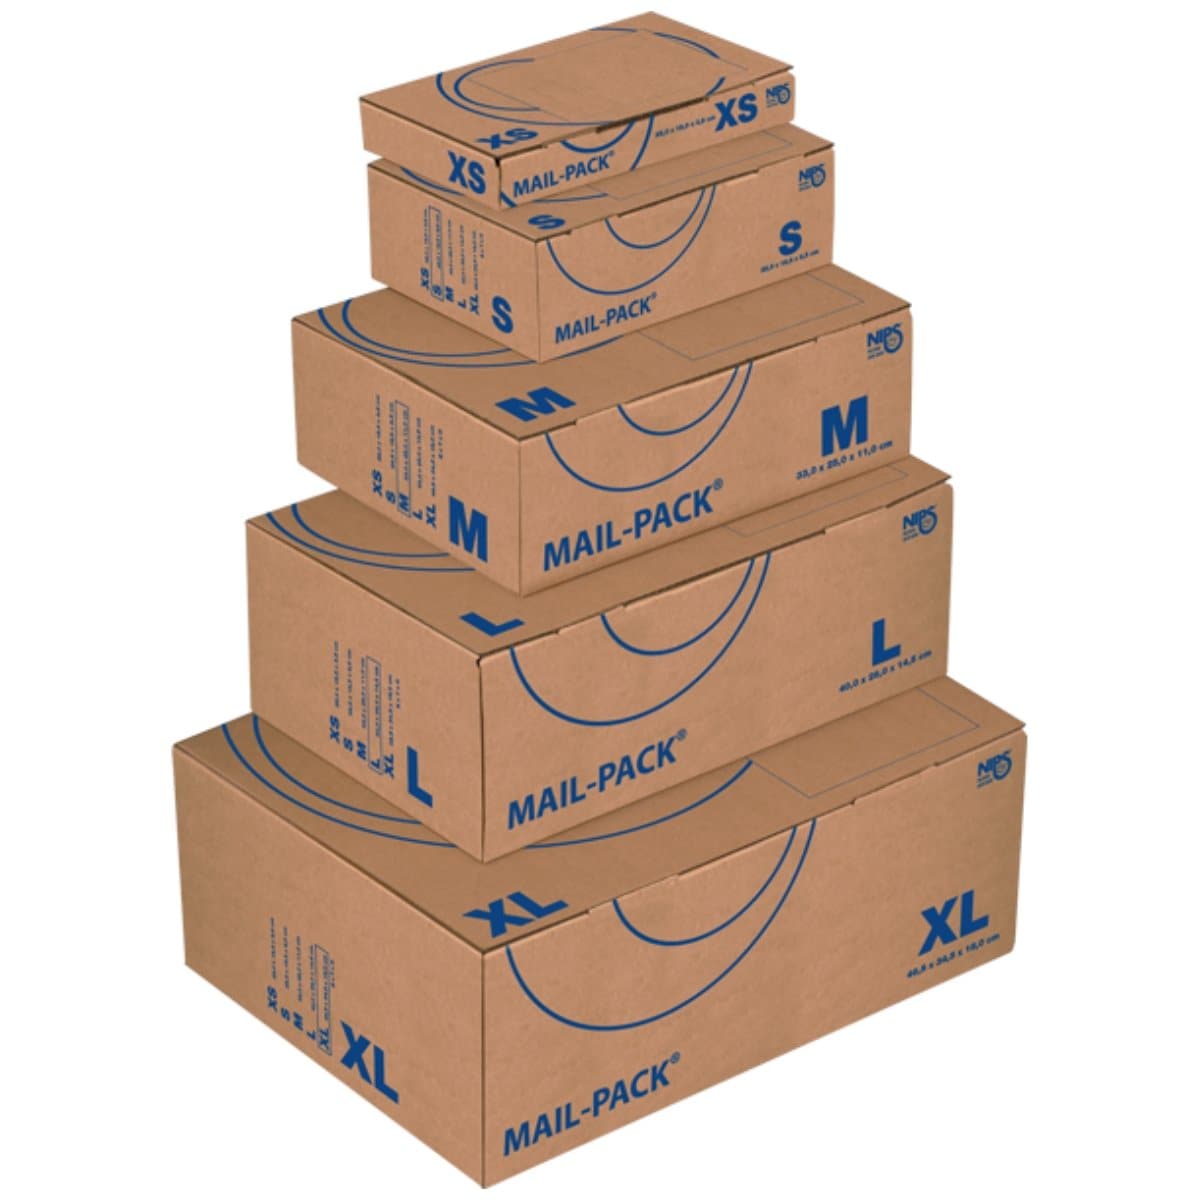 NIPS Mail-Pack Basic, Cardboard Box, Brown